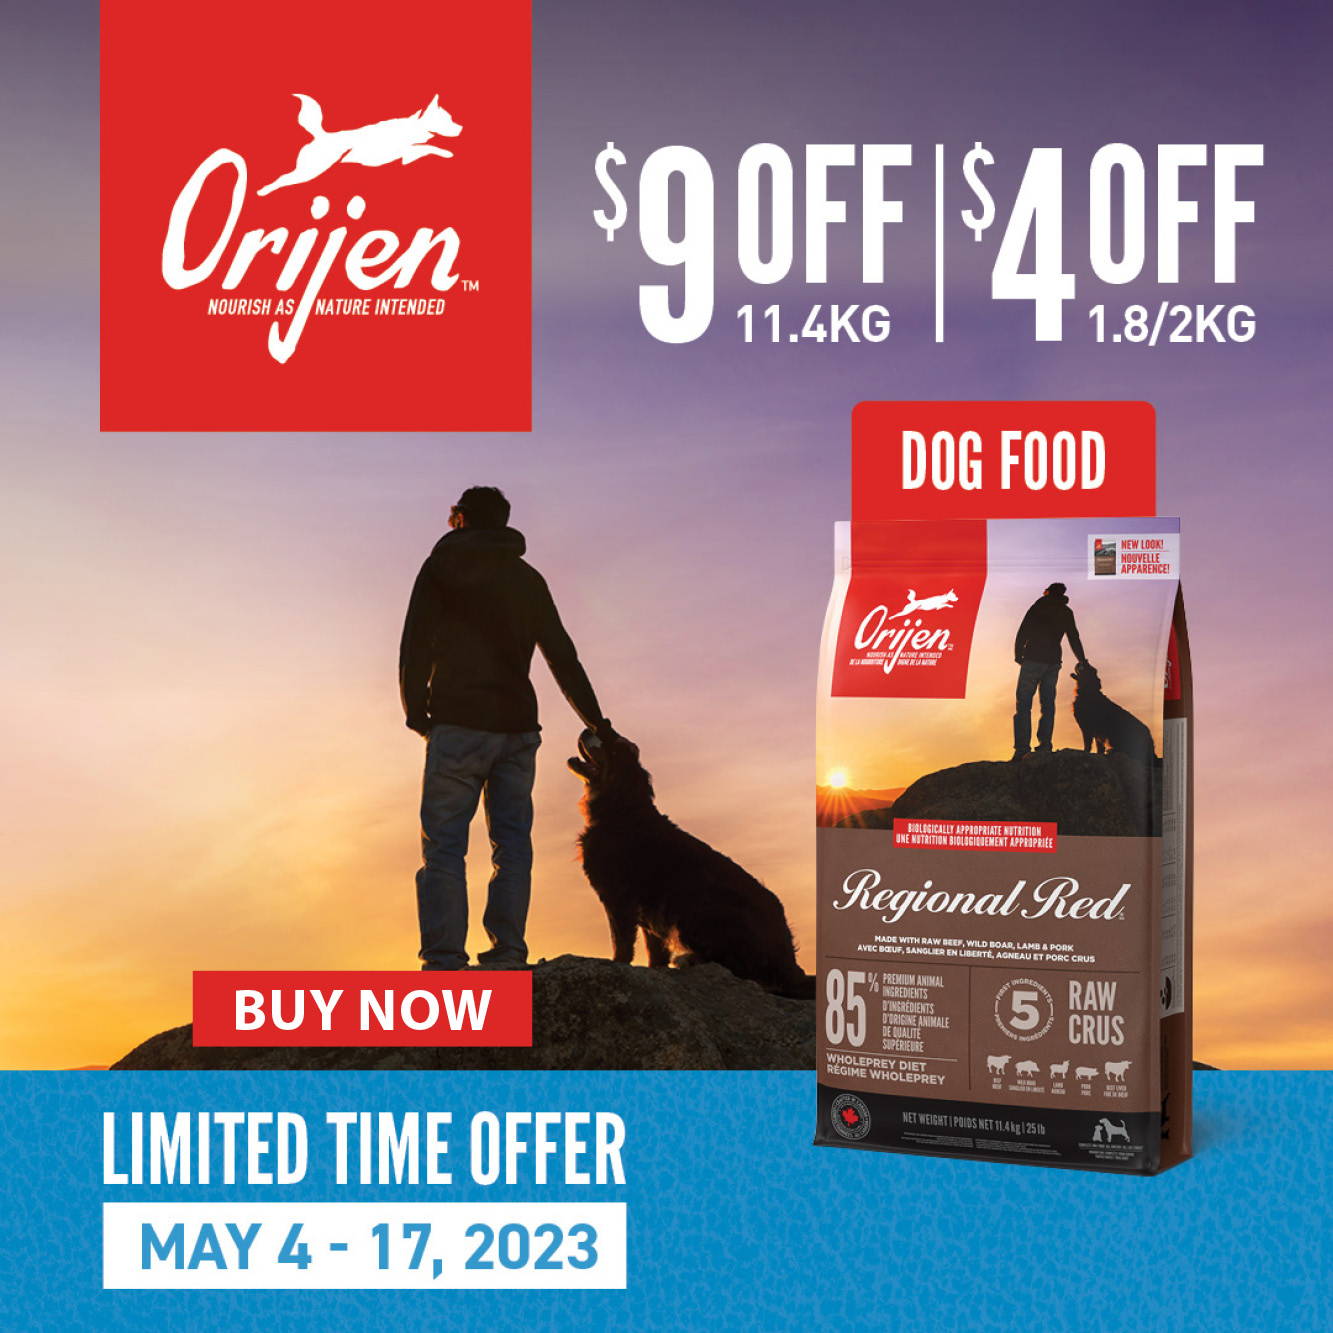 $9 off Orijen Dog Food 11.4kg and $4 off 2kg